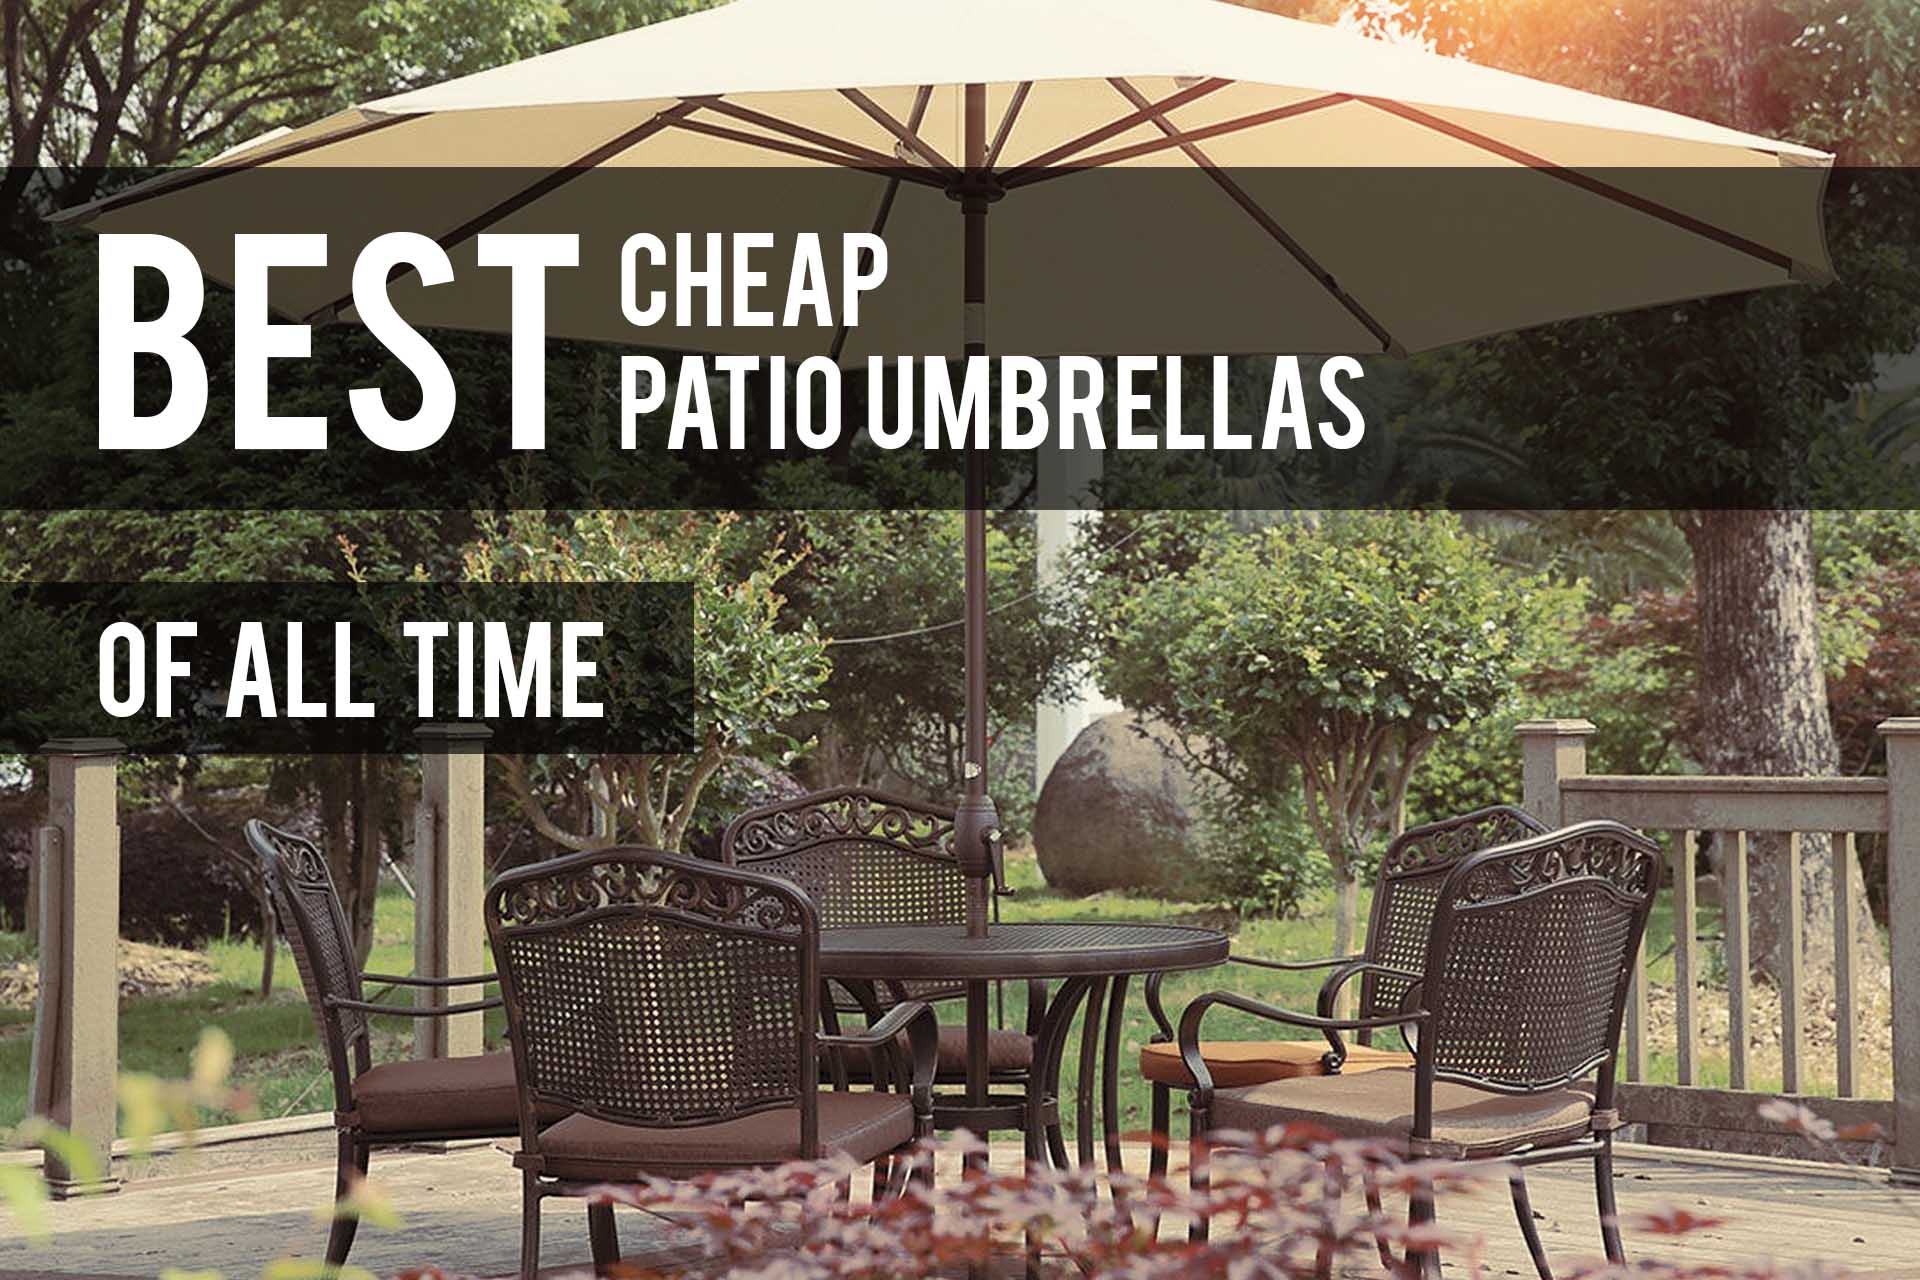 best value patio umbrella